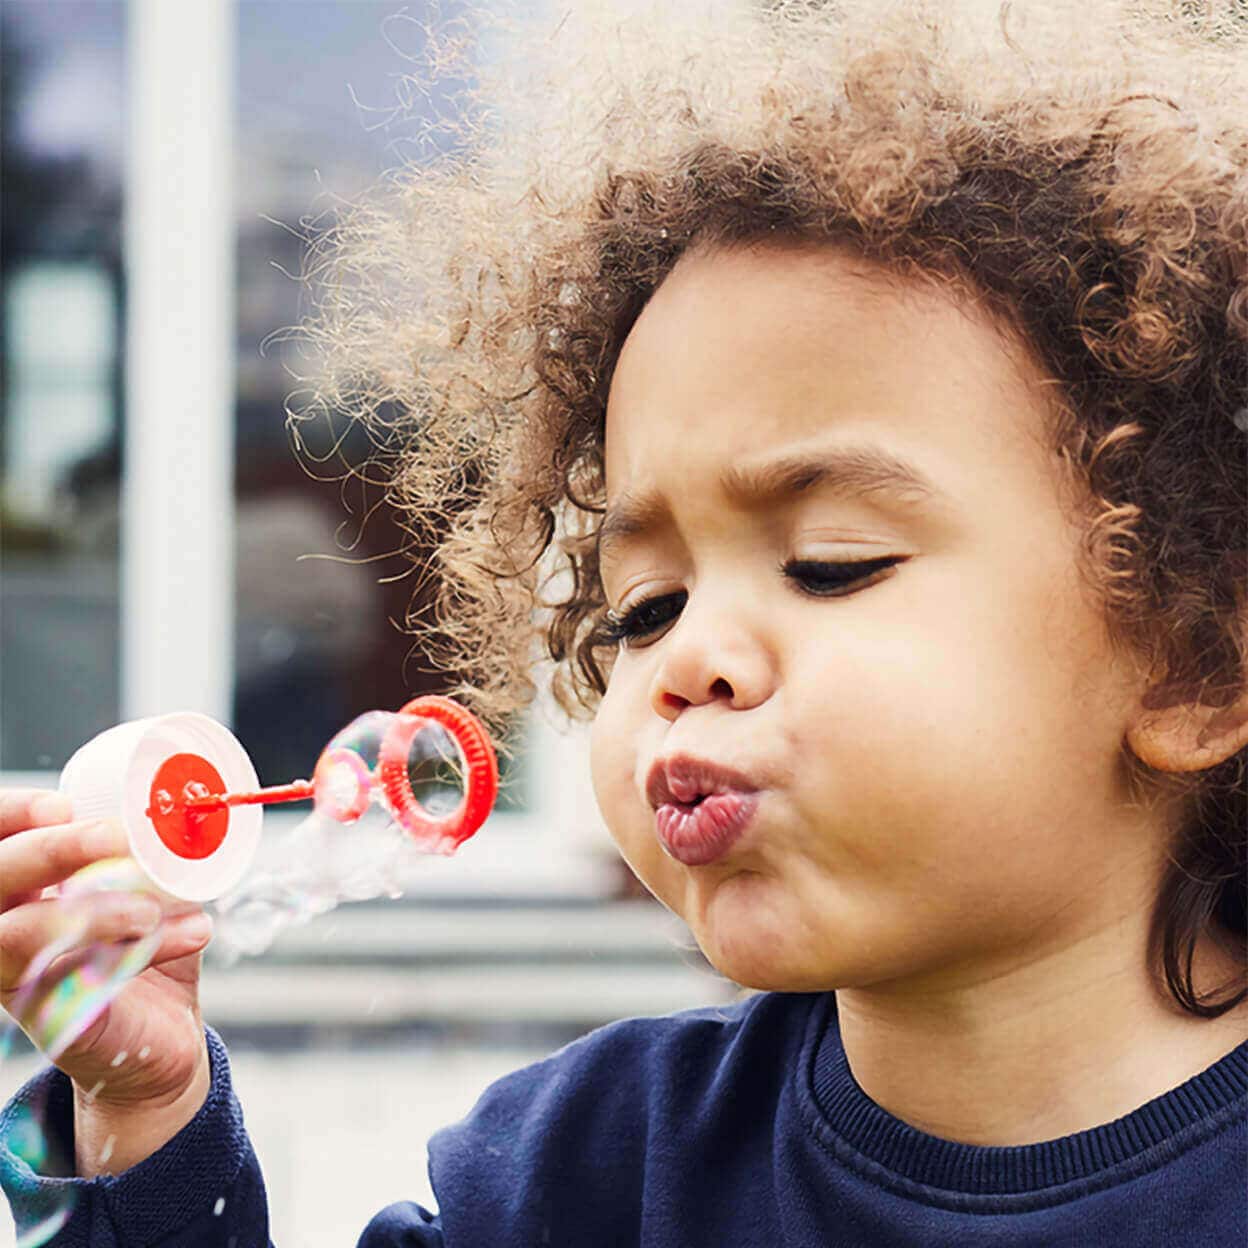 A child blows bubbles.